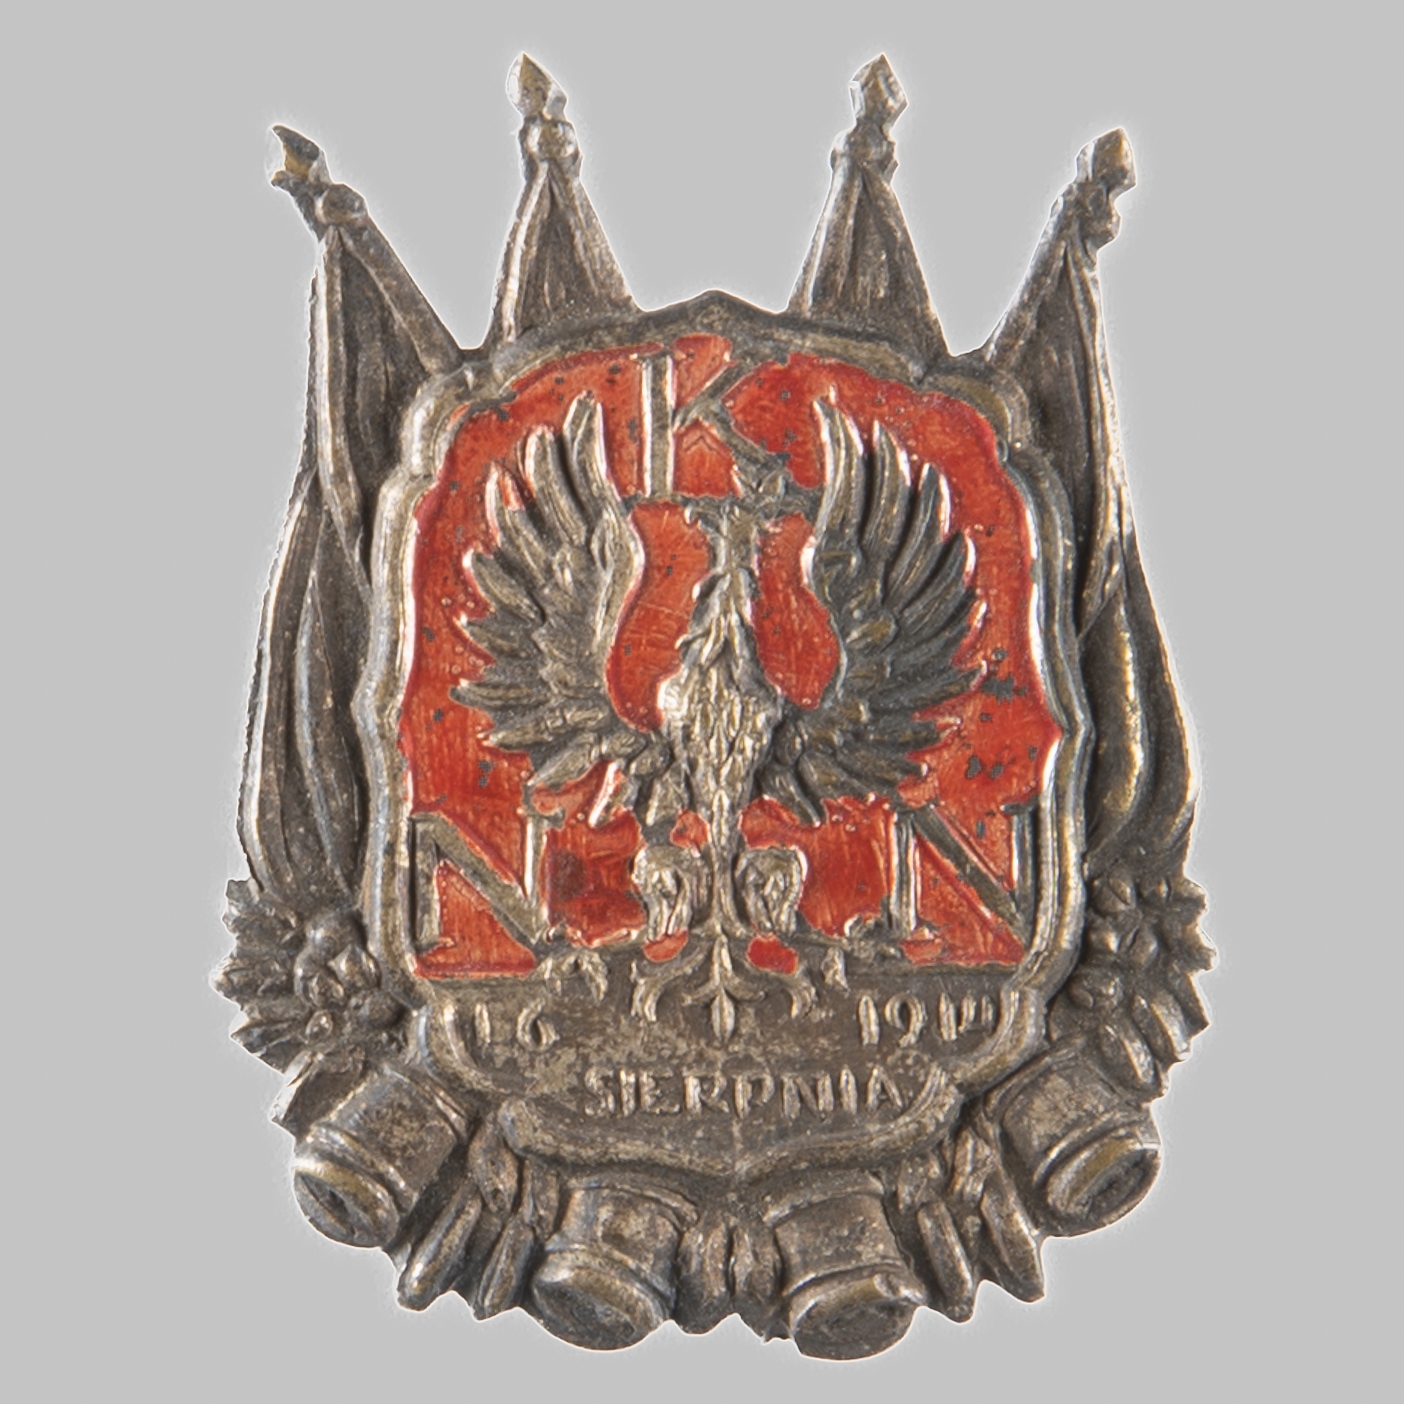 Odznaka upamiętniająca utworzenie w Krakowie Naczelnego Komitetu Narodowego, "N.K.N. 16 SIERPNIA 1914"